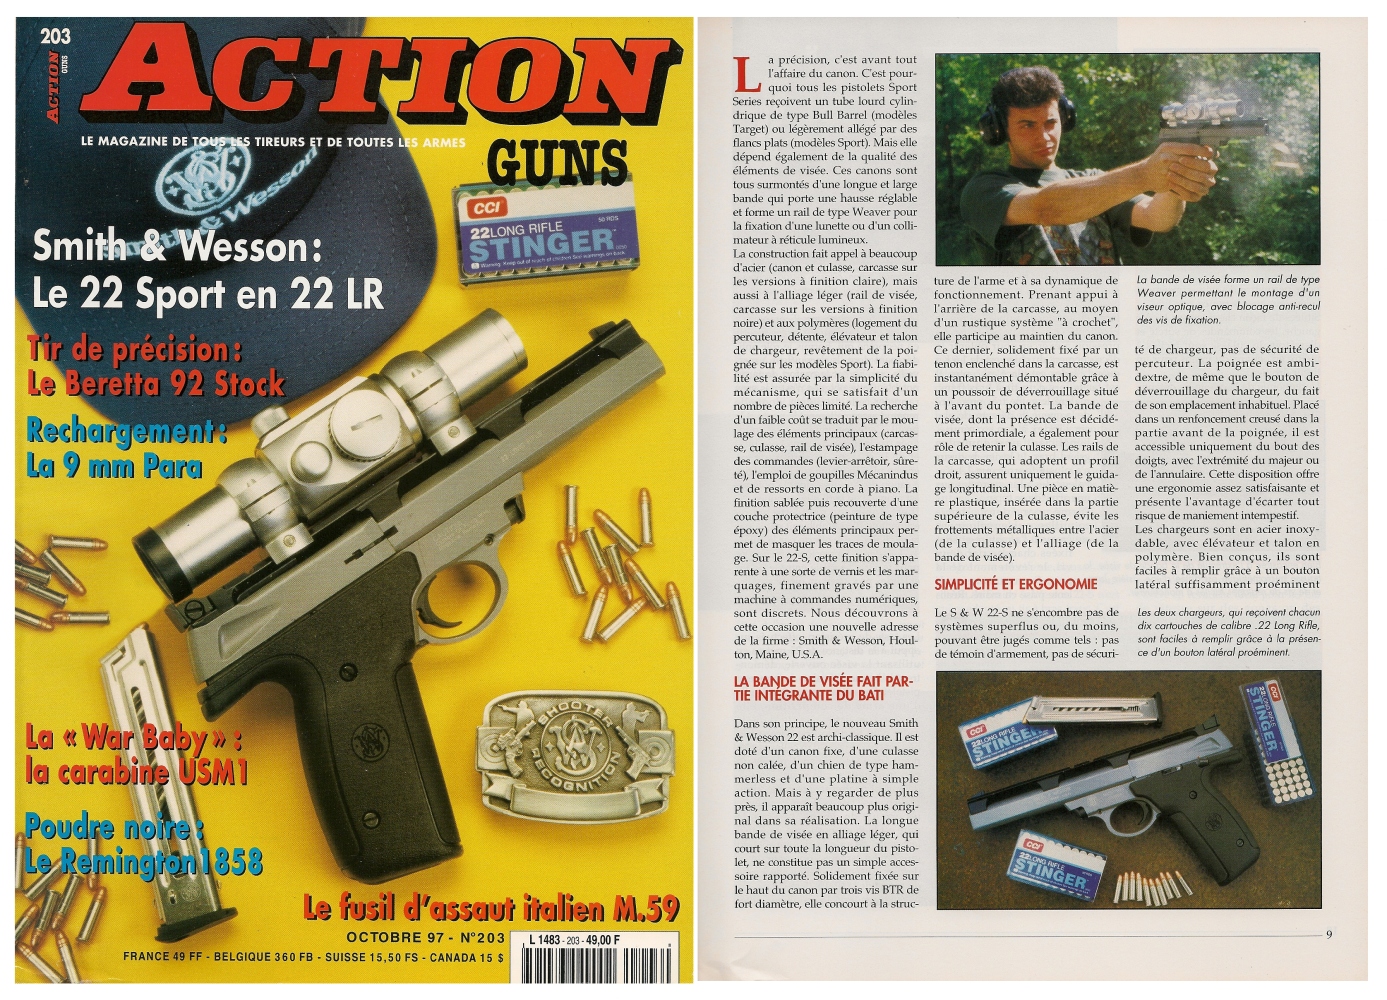 Le banc d'essai du pistolet Smith & Wesson 22-S Sport a été publié sur 6 pages dans le magazine Action Guns n°203 (octobre 1997). 